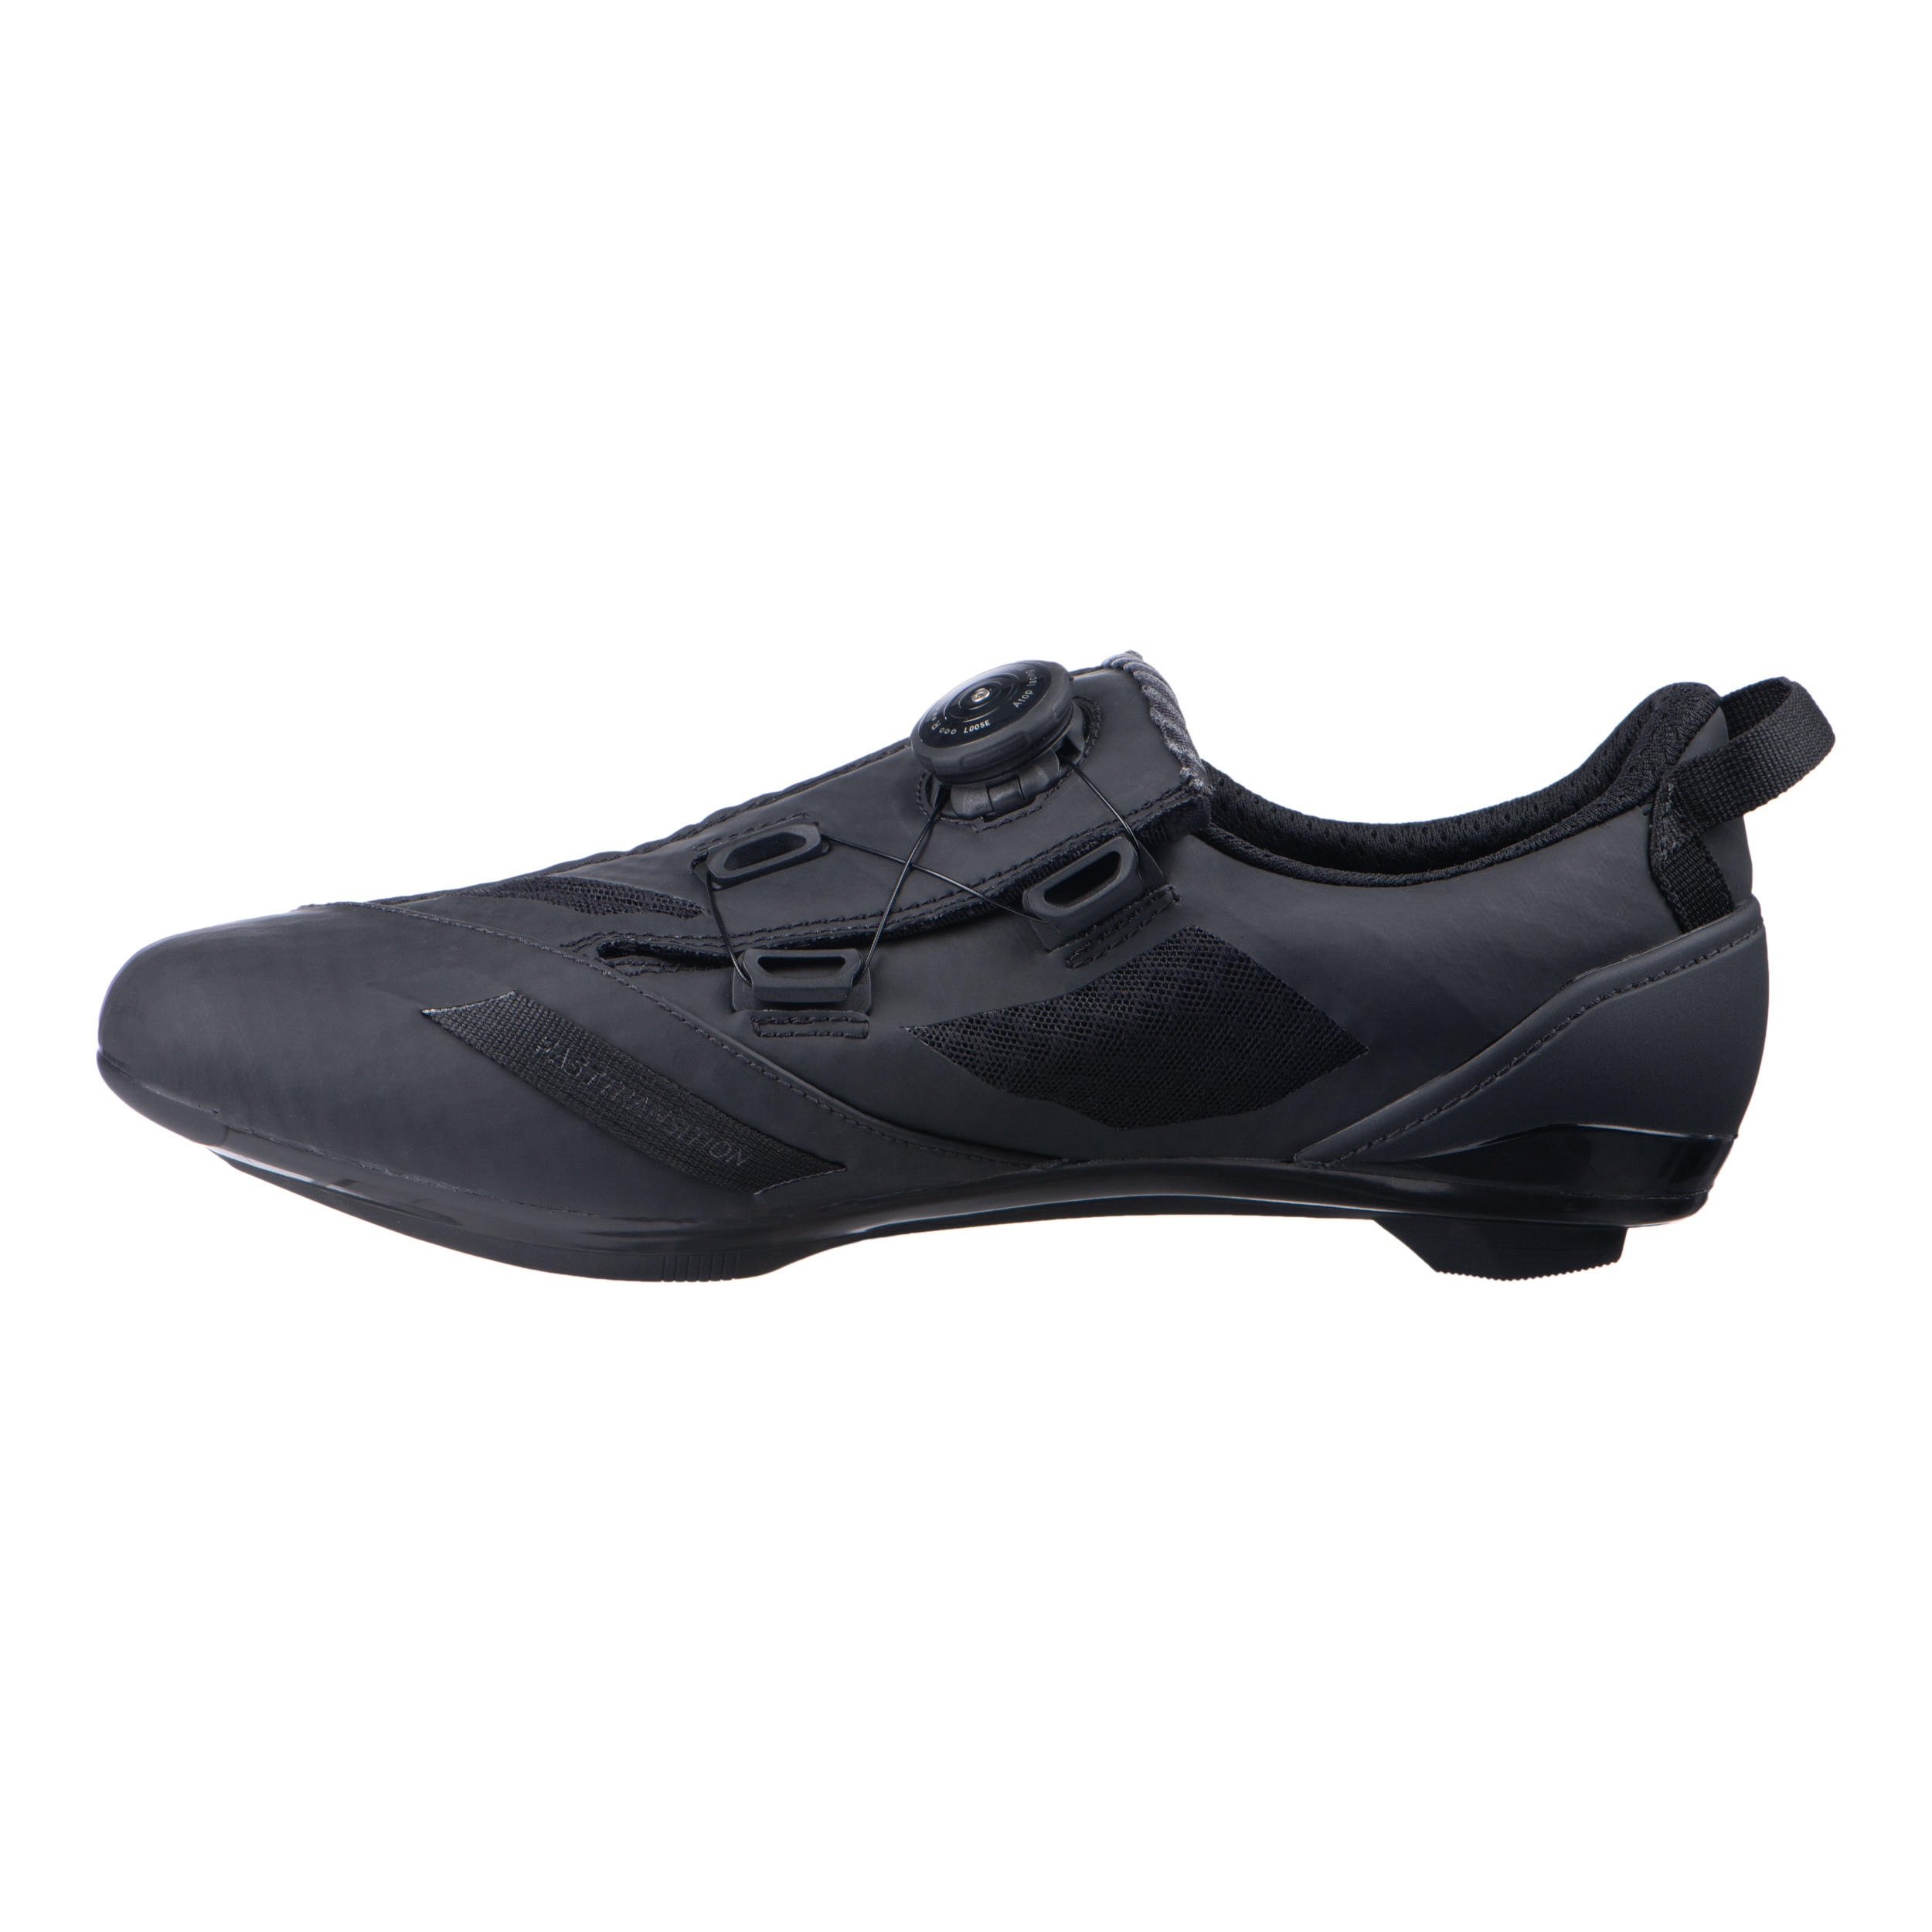 Aptonia Triathlon Cycling Shoes - Black 6/8